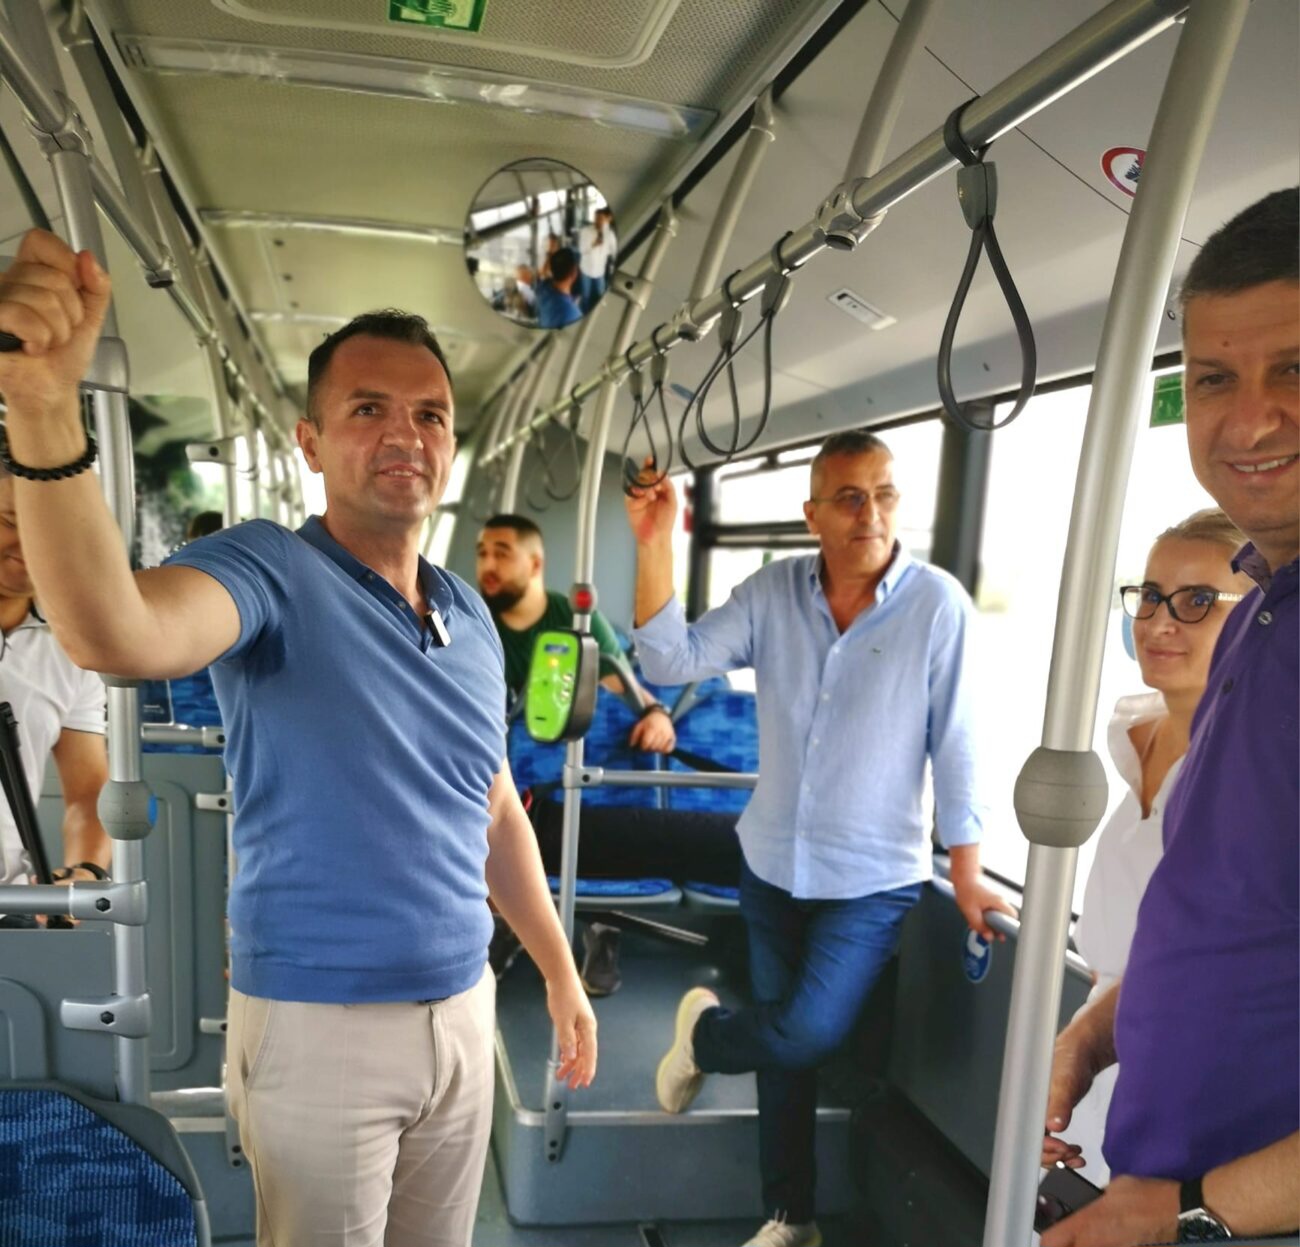 Transportul public local de la Târgoviște, alternativă excelentă și pe caniculă. Conducerea primăriei a verificat astăzi condițiile din autobuzele moderne, același model ca în marile orașe europene.